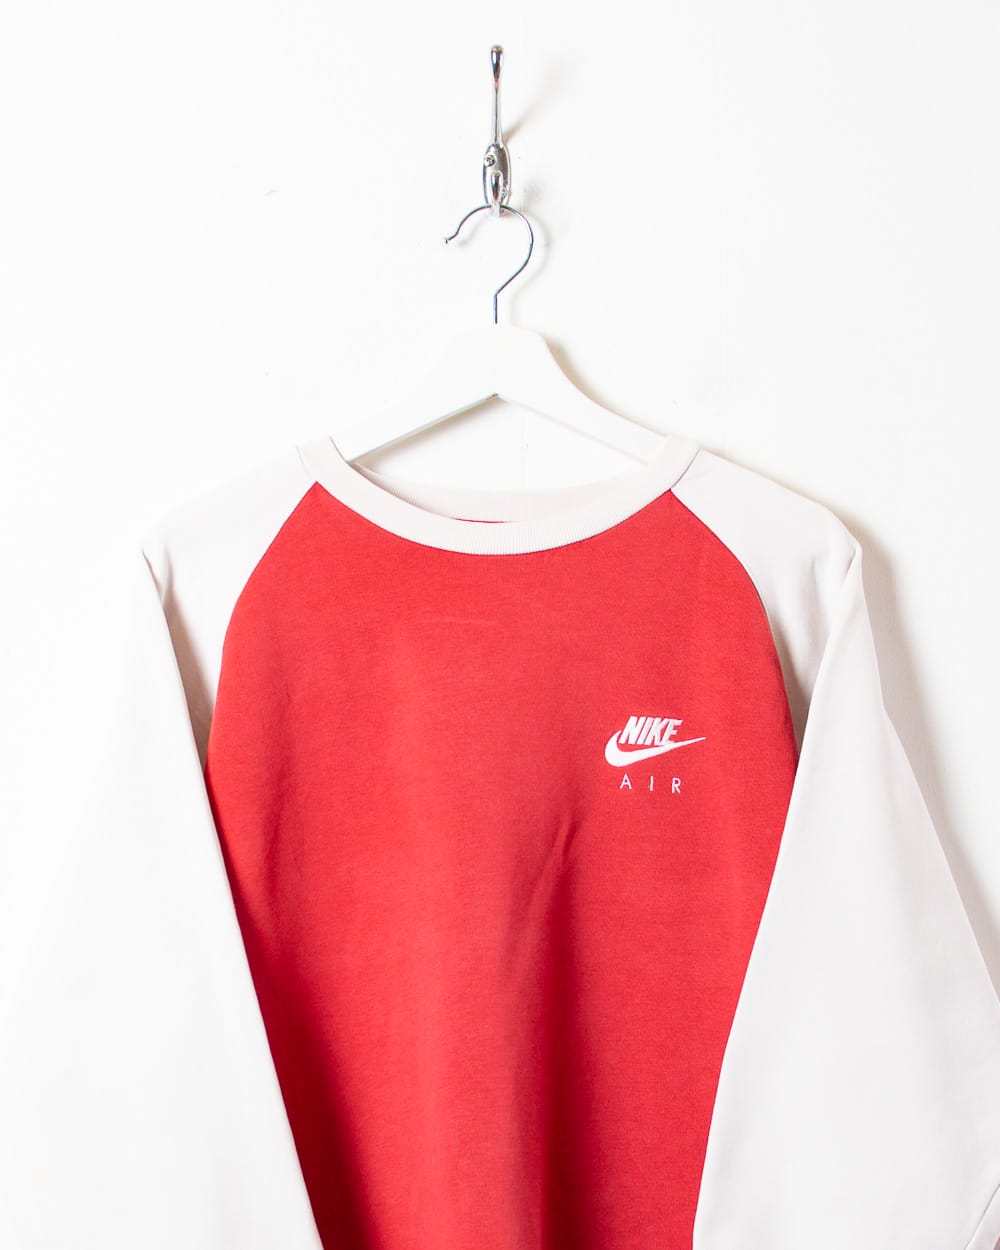 Red Nike Air Sweatshirt - X-Large Women's